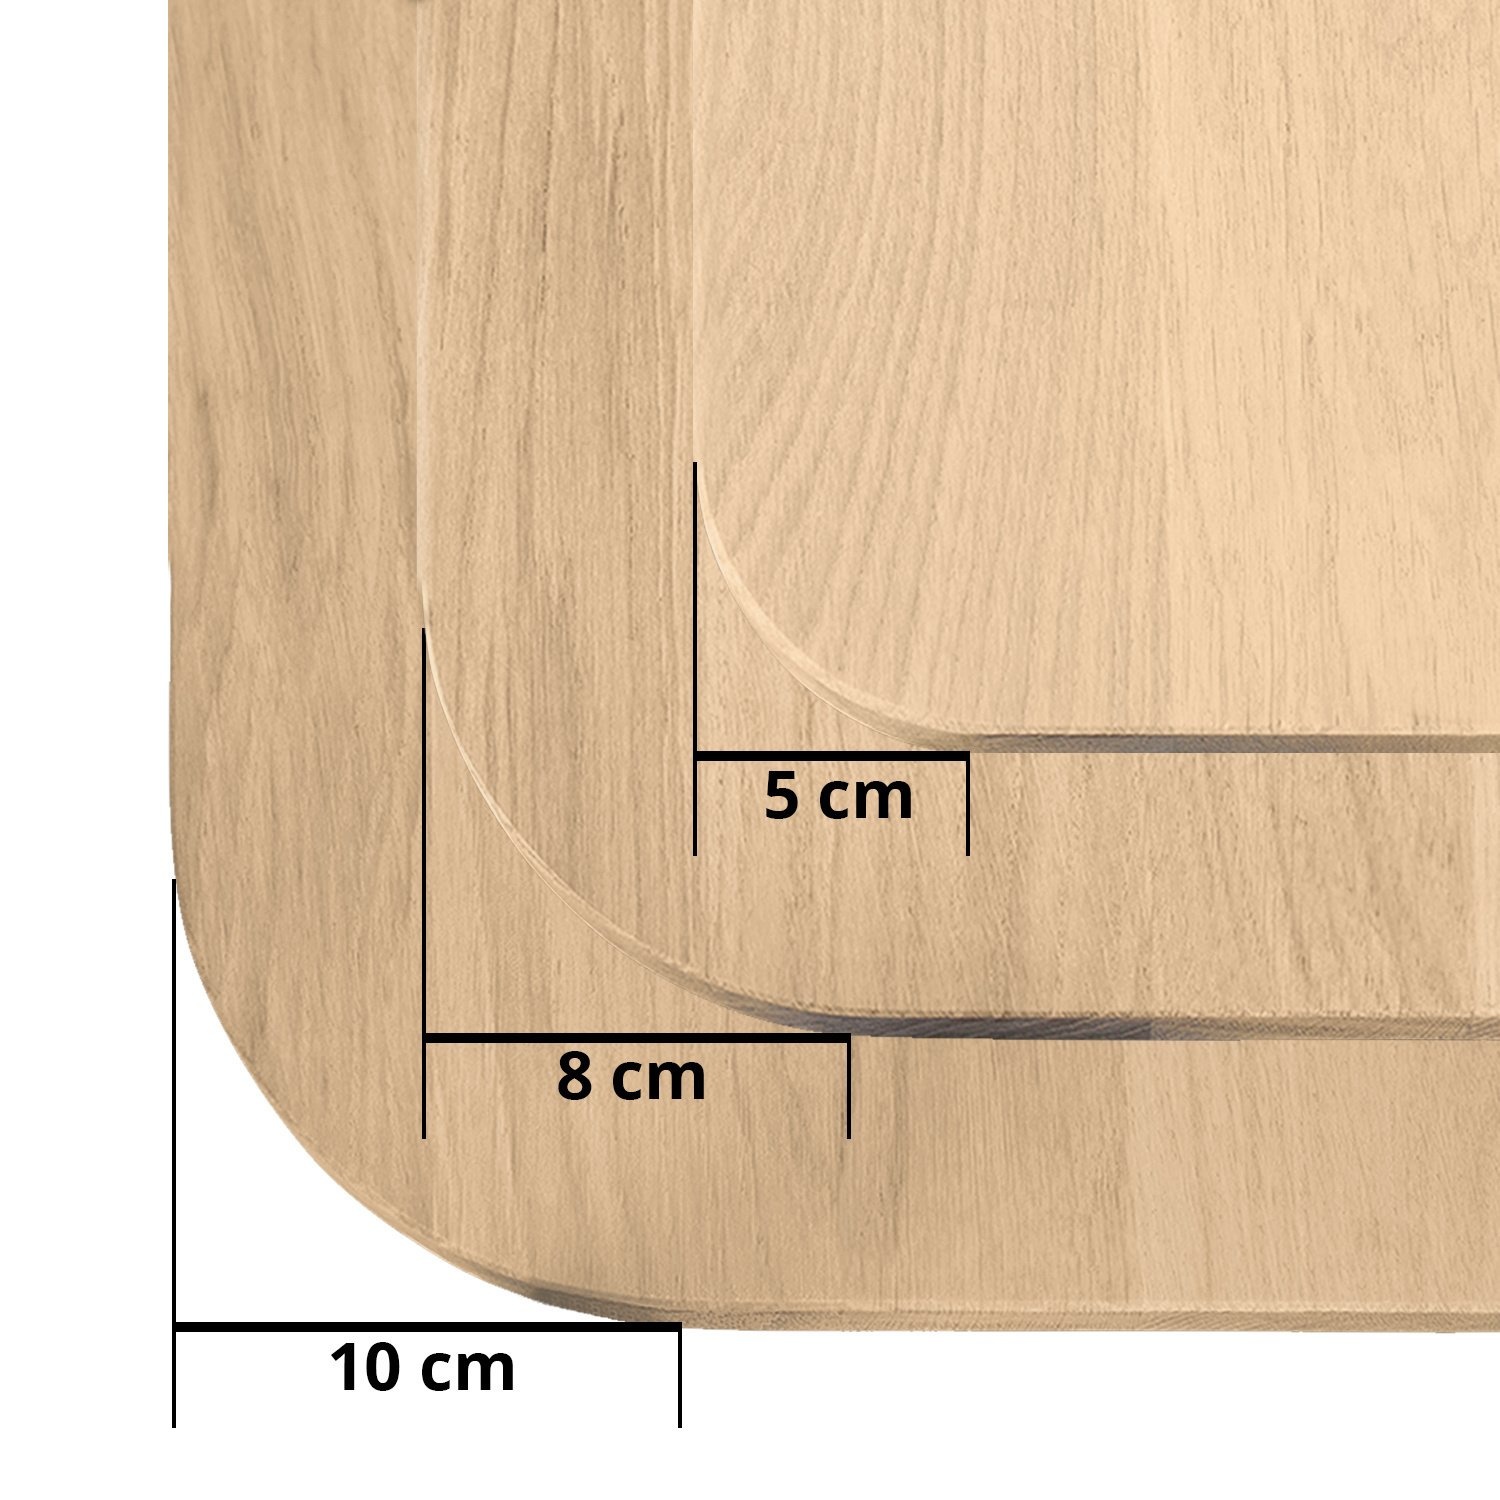  Tischplatte Eiche - mit runden Ecken - 2,7 cm dick (1-Schicht) - Breite Lamellen (10 - 12 cm breit) - Eichenholz A-Qualität - verleimt & künstlich getrocknet (HF 8-12%) - mit abgerundeten Kanten - verschiedene Größen